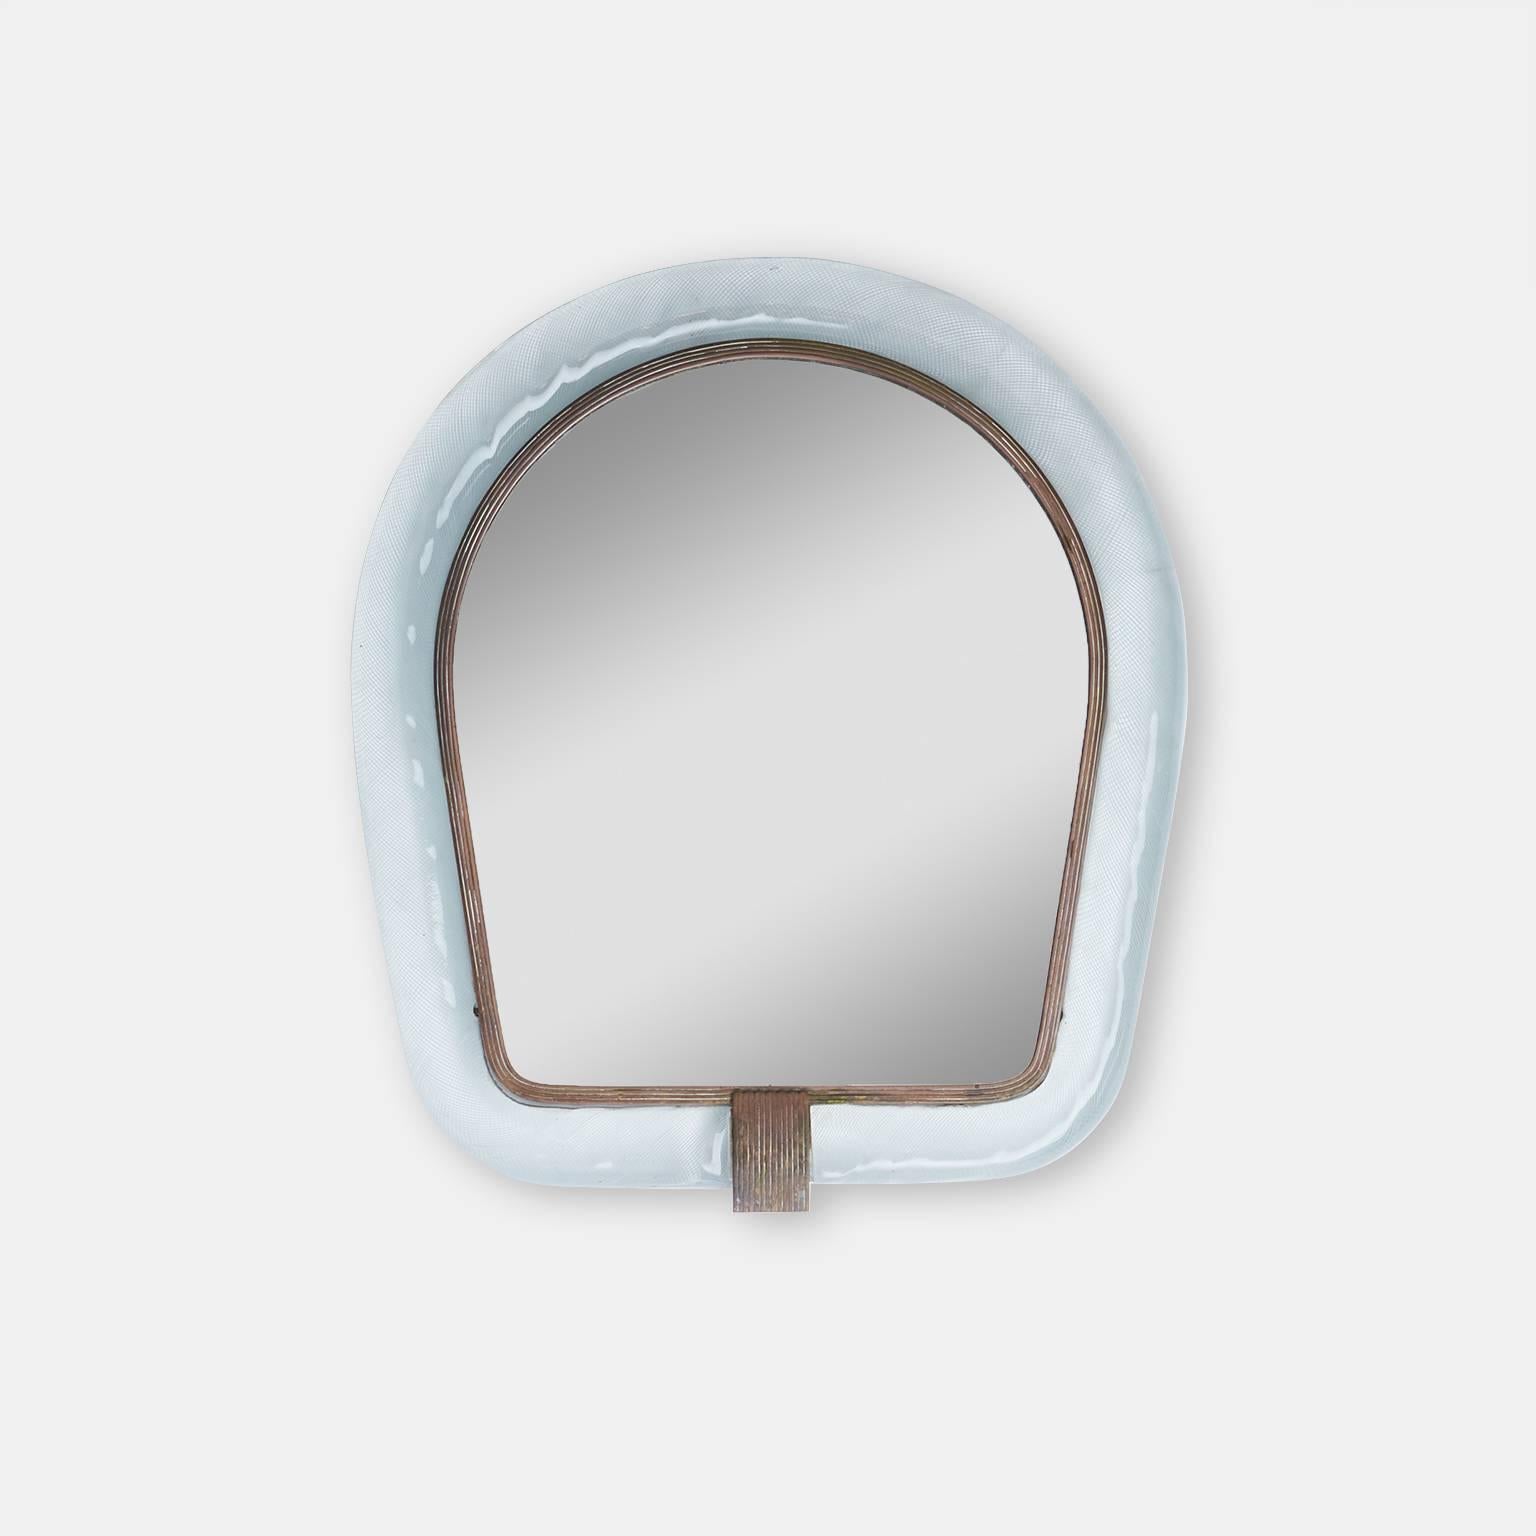 Un miroir au sommet arqué avec un cadre intérieur en laiton et un motif de verre tressé Venini.
Marqué Murano.